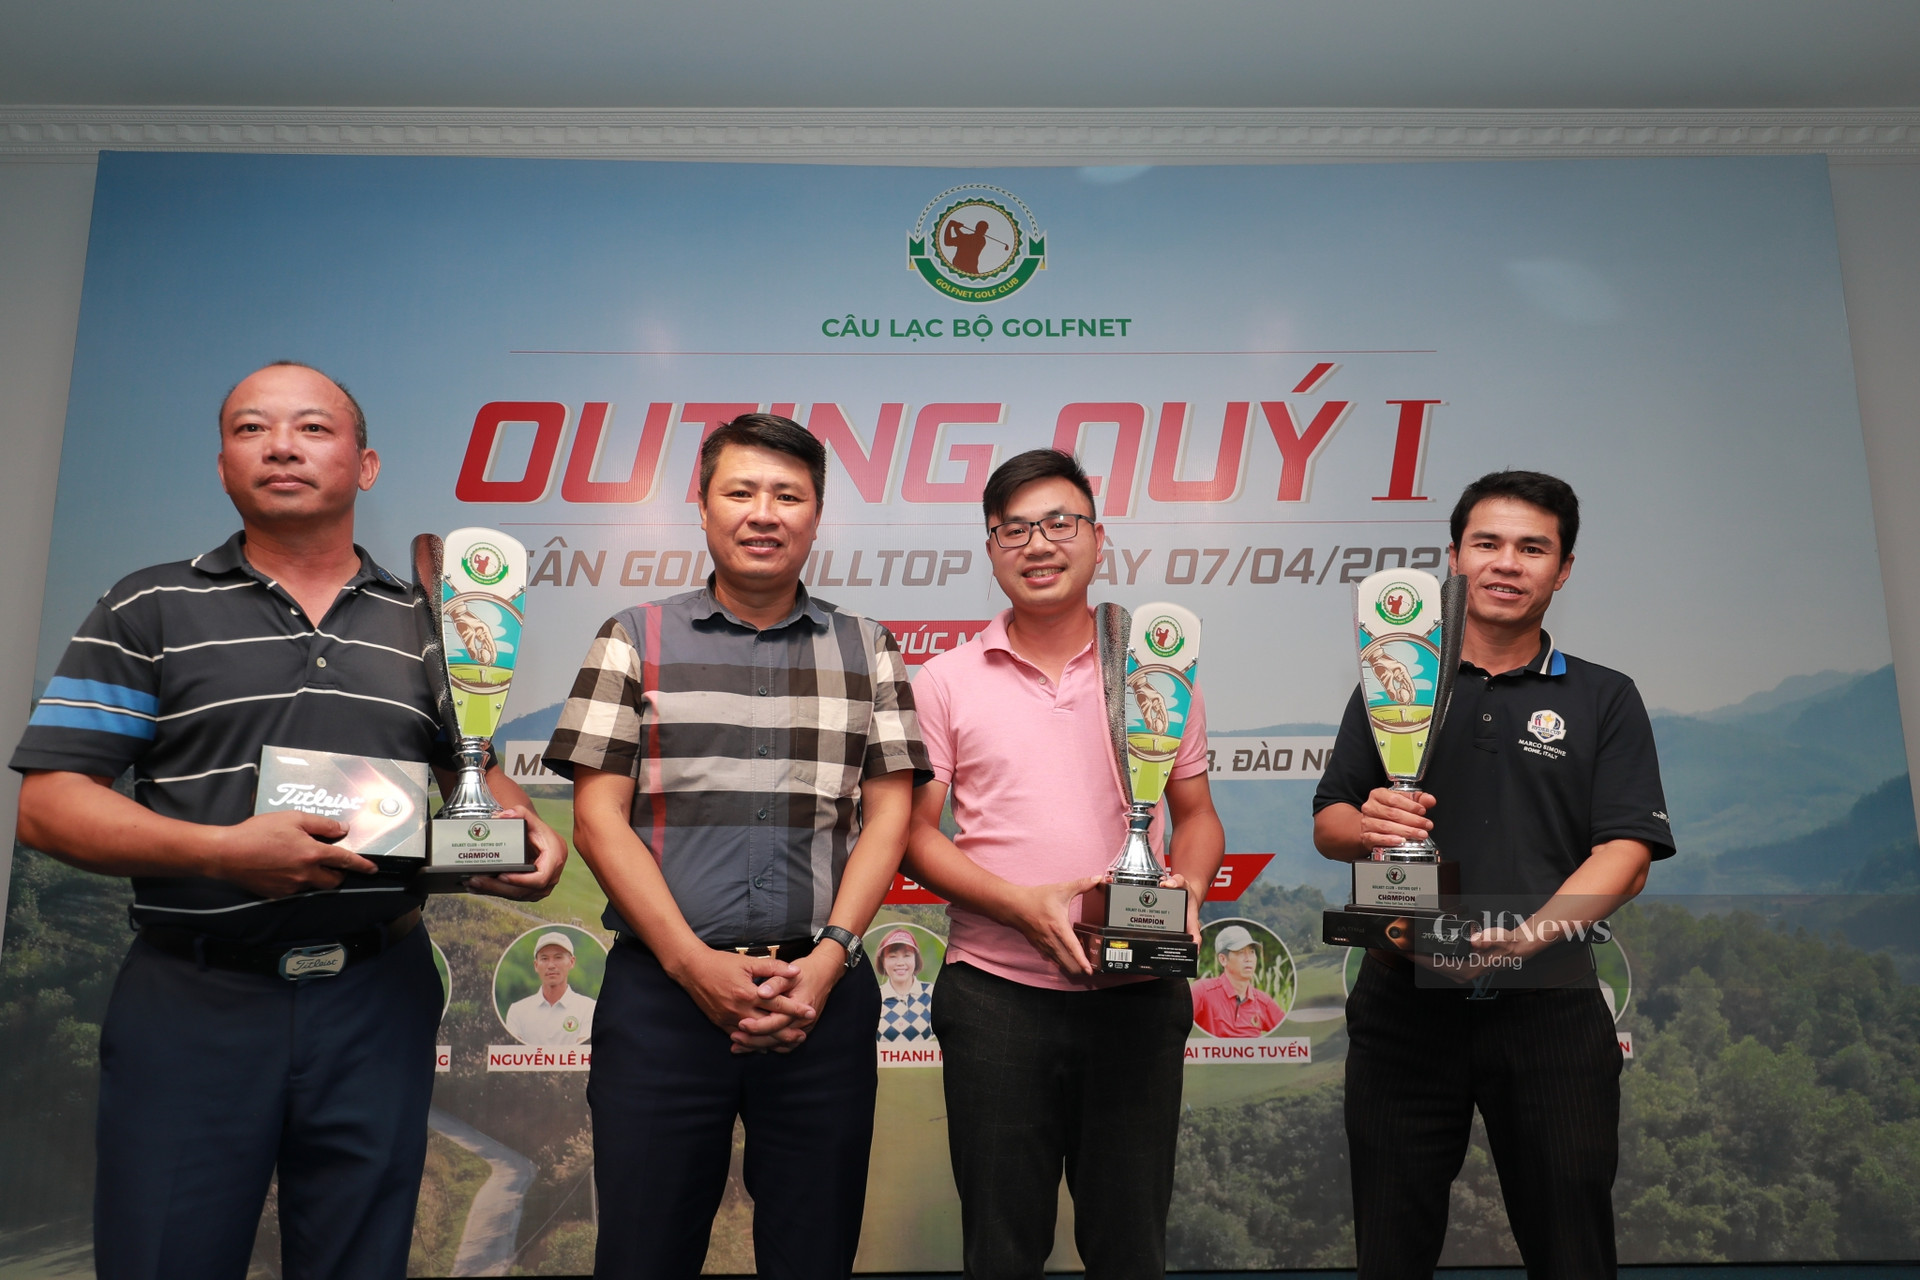 CLB GolfNet tổ chức giải đấu Outing Quý 1 gặp mặt đầu năm - Ảnh 2.